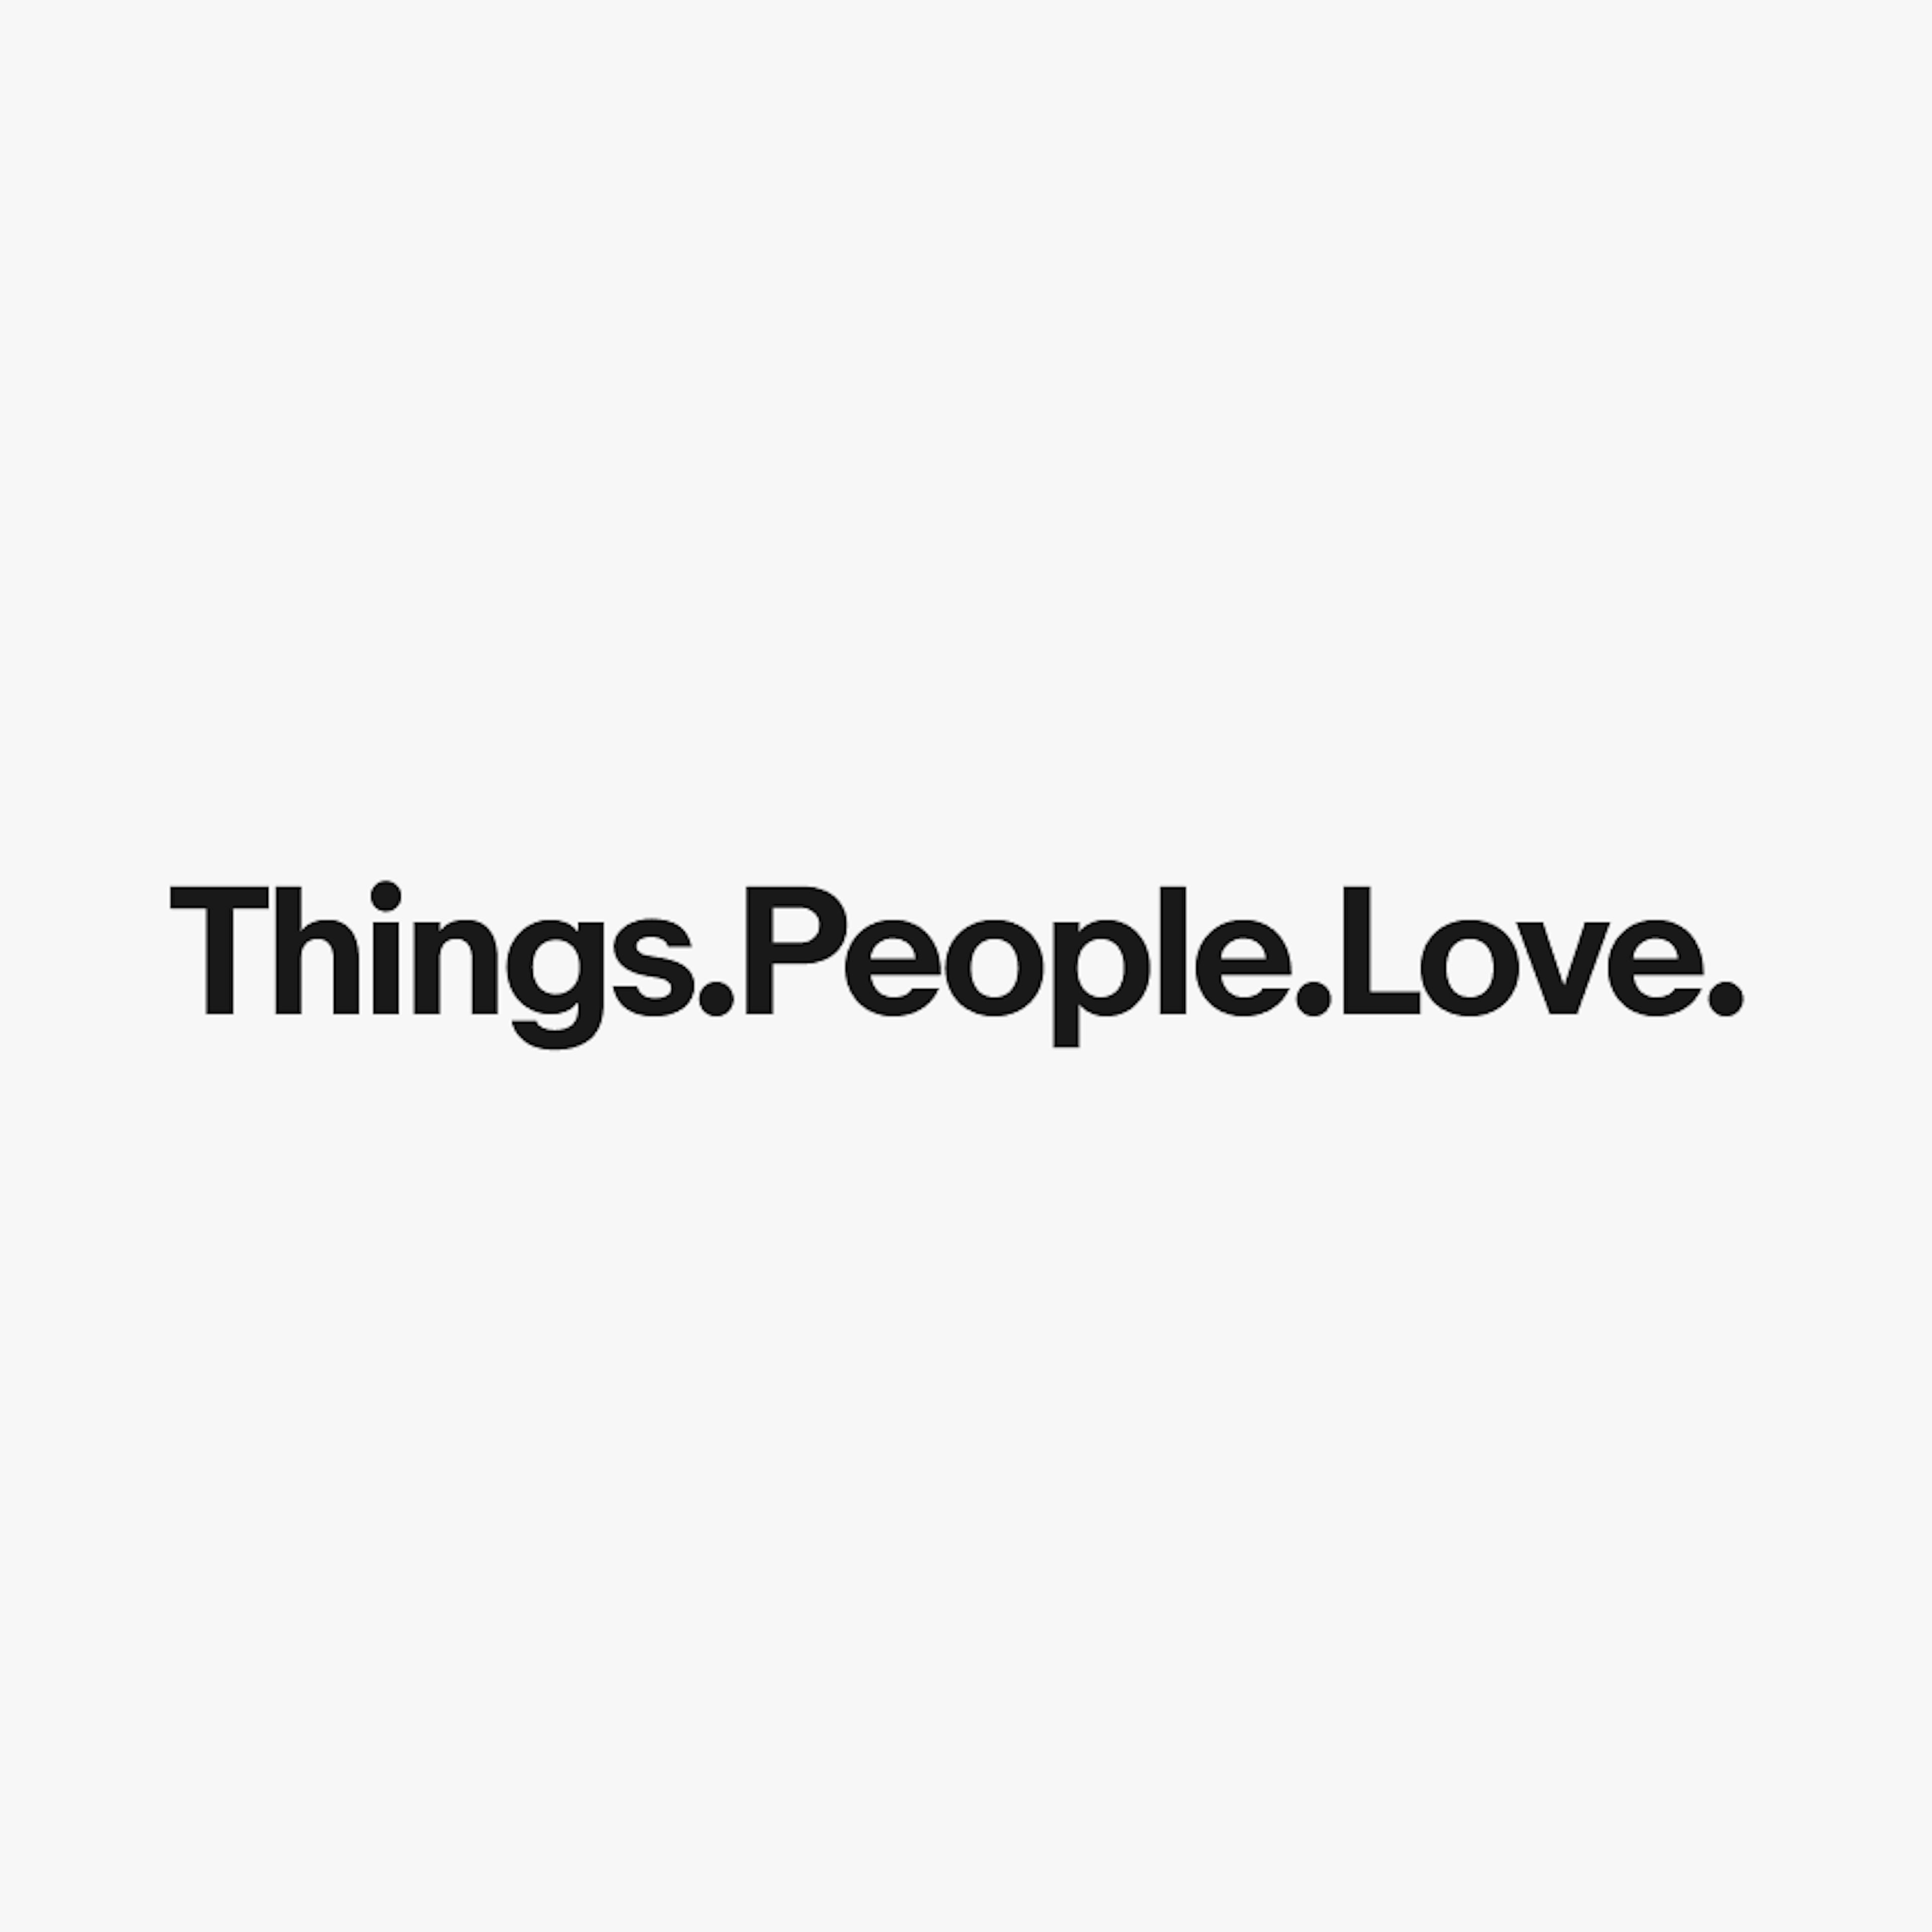 The eBay tagline Things.People.Love. in it’s standard form.